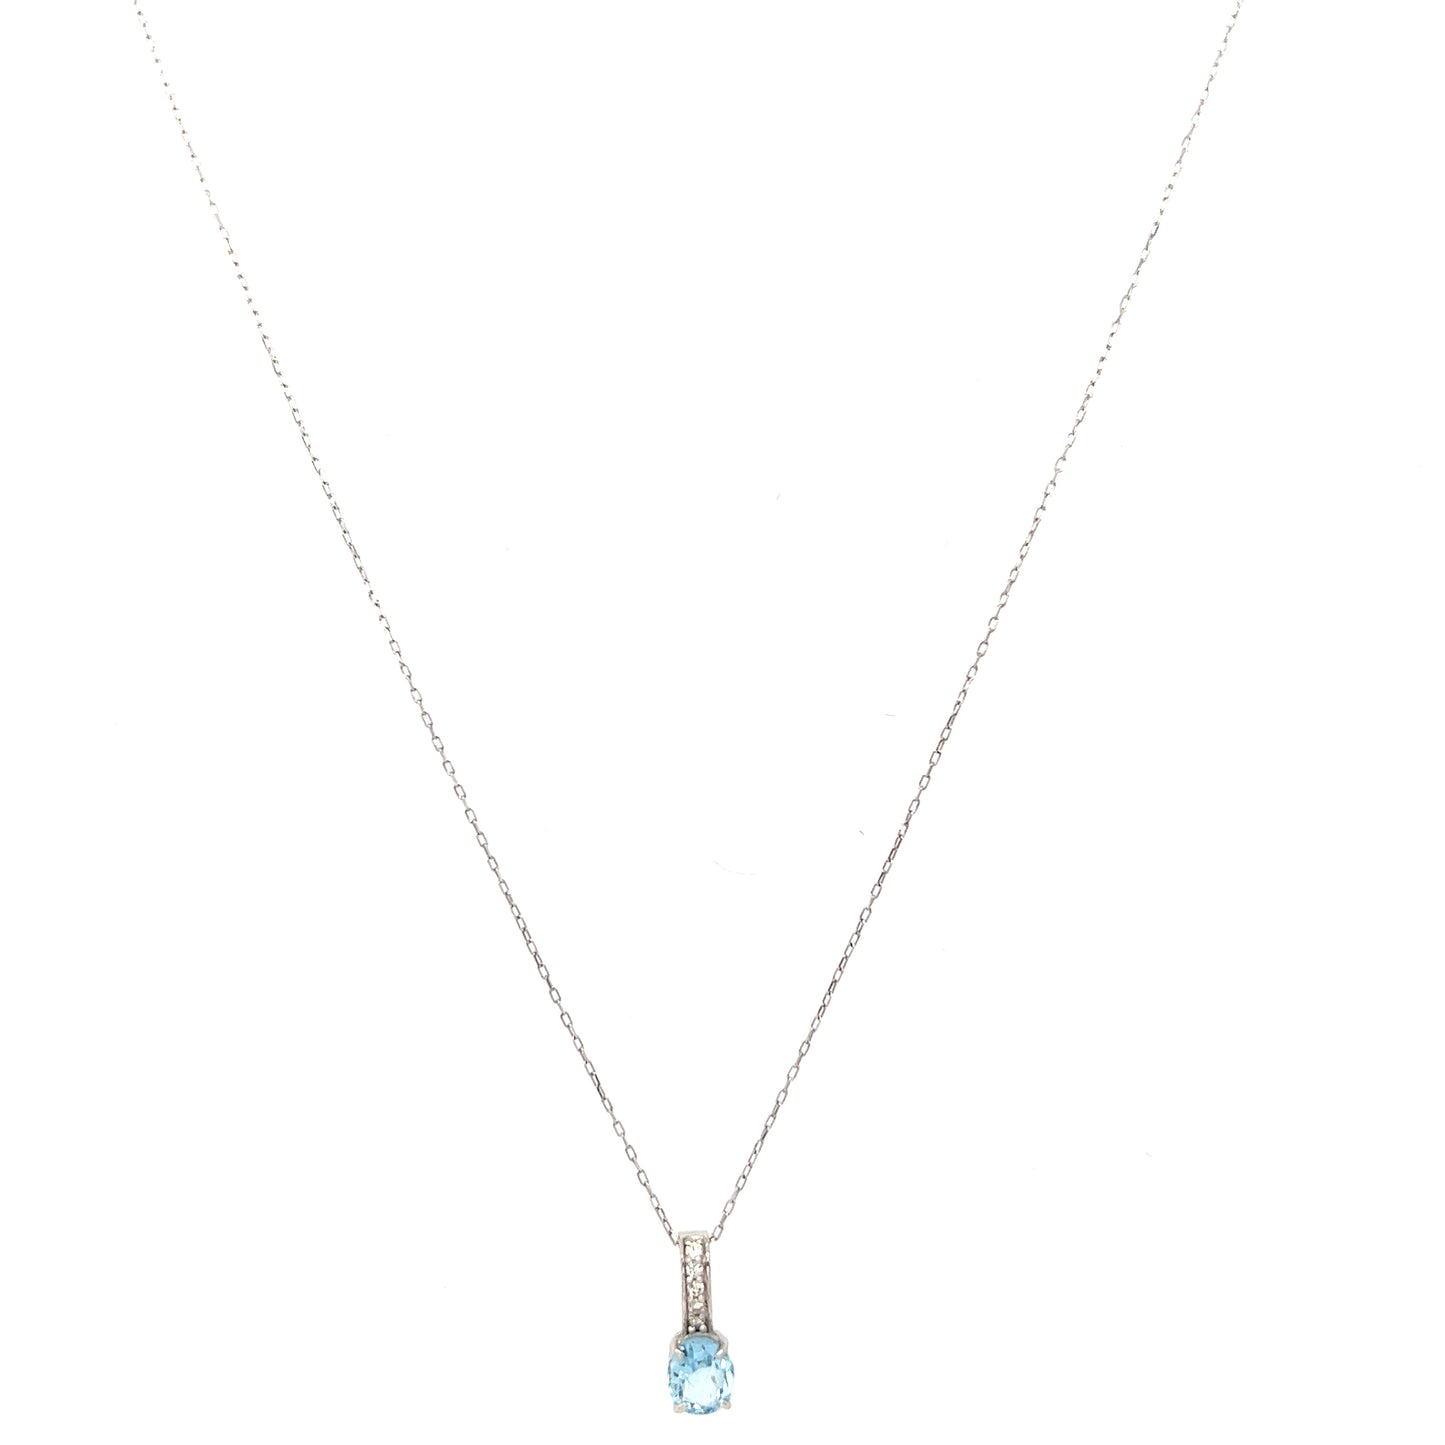 Aquamarine diamond necklace